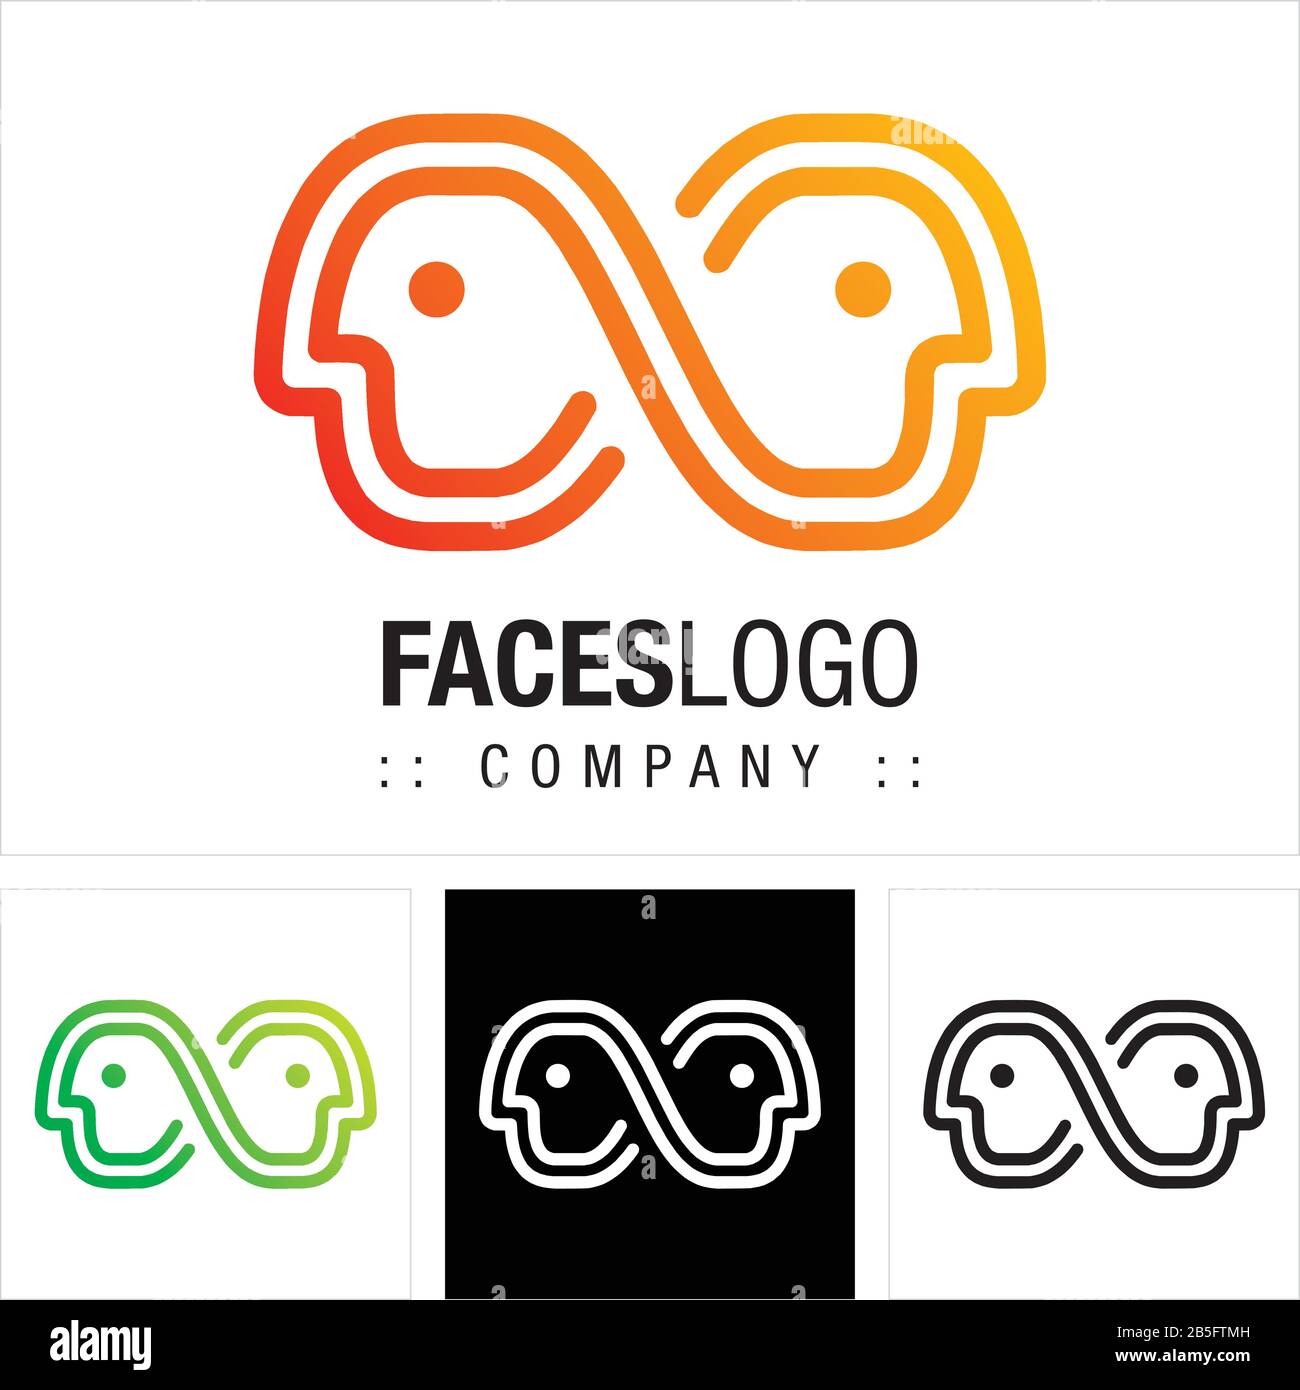 Logo (Logotipo) Di Vector Symbol Company Faces (Profilo). Persone, Persone, Testa, L'Illustrazione Dell'Icona Infinito. Design Moderno Ed Elegante. Illustrazione Vettoriale